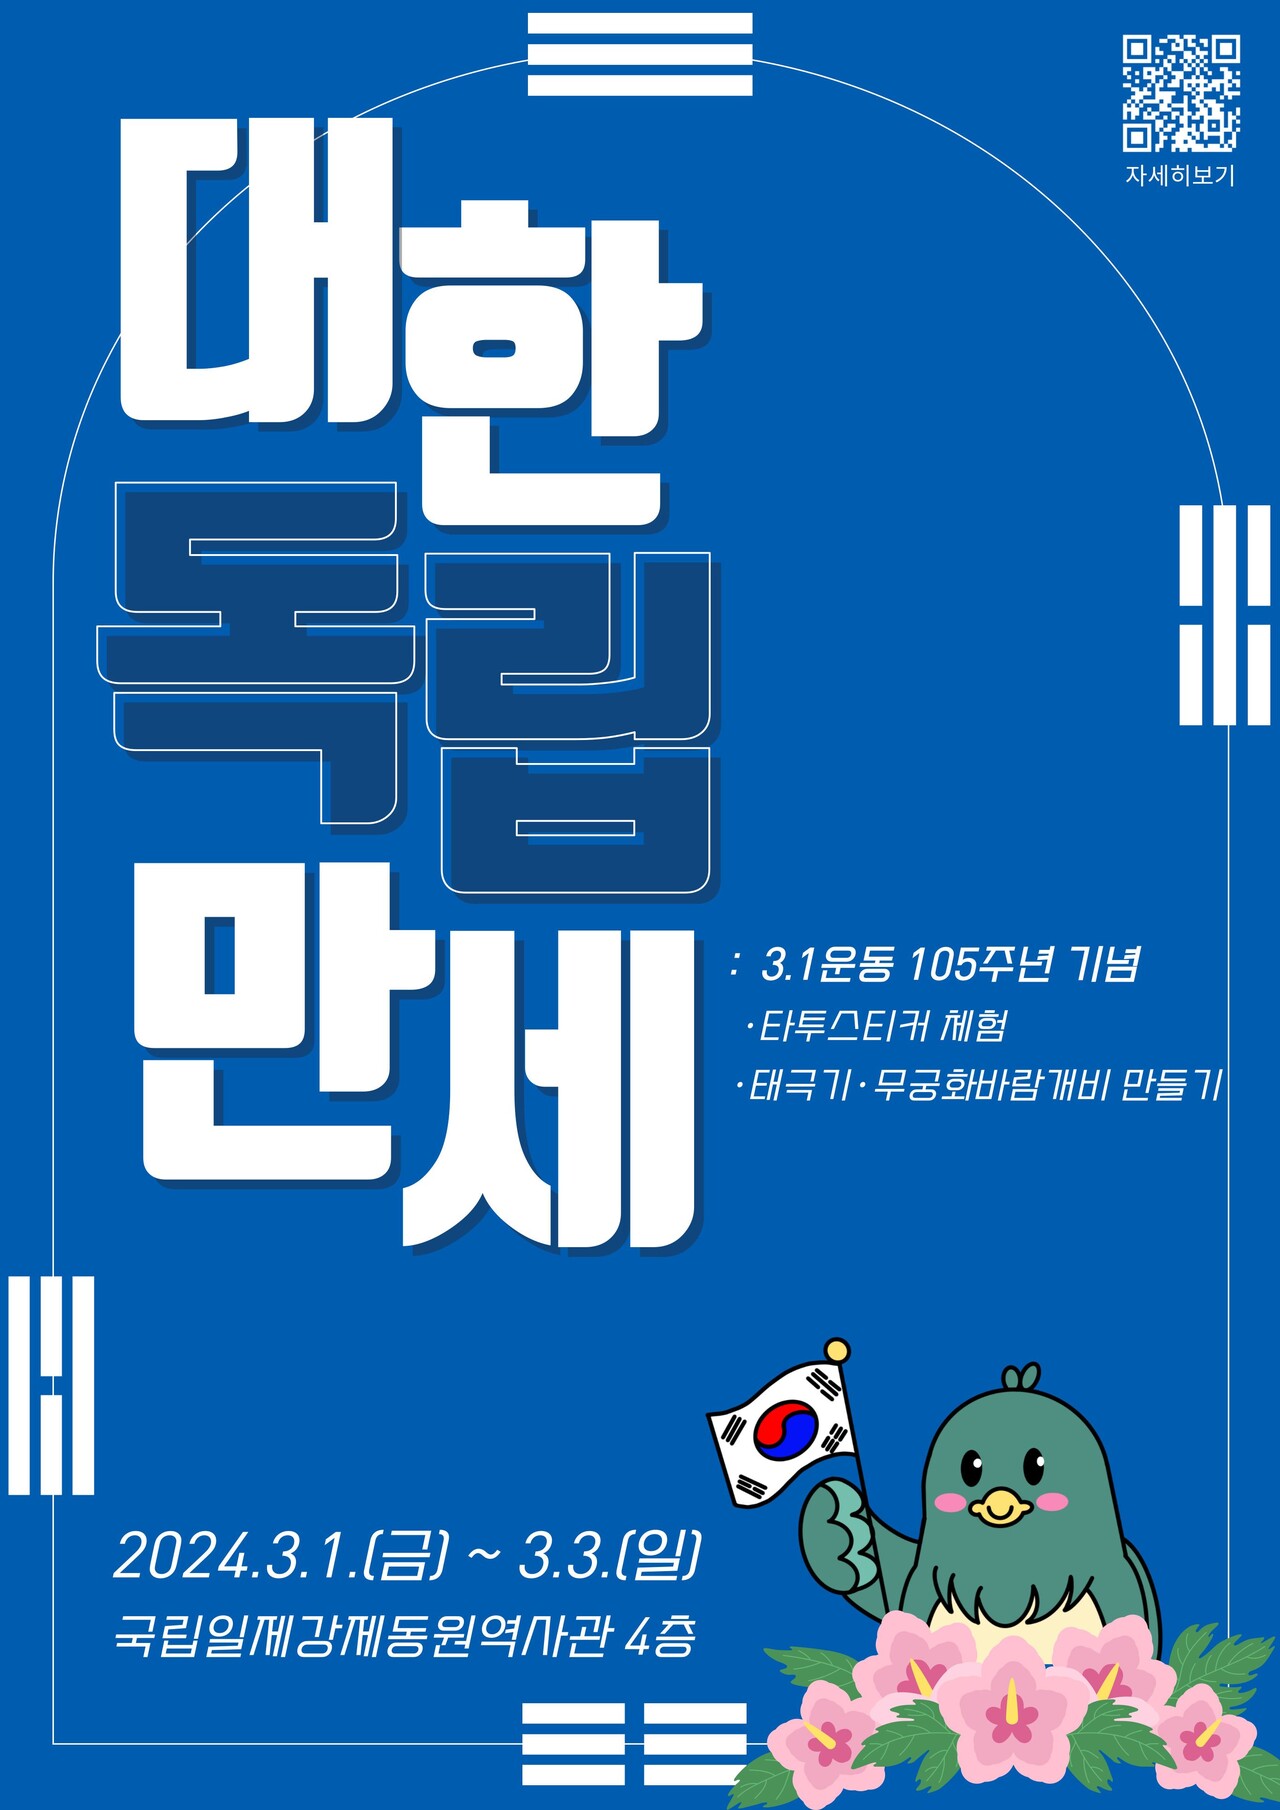 국립일제강제동원역사관 '3.1운동 150주년 가념 행사' 포스터 